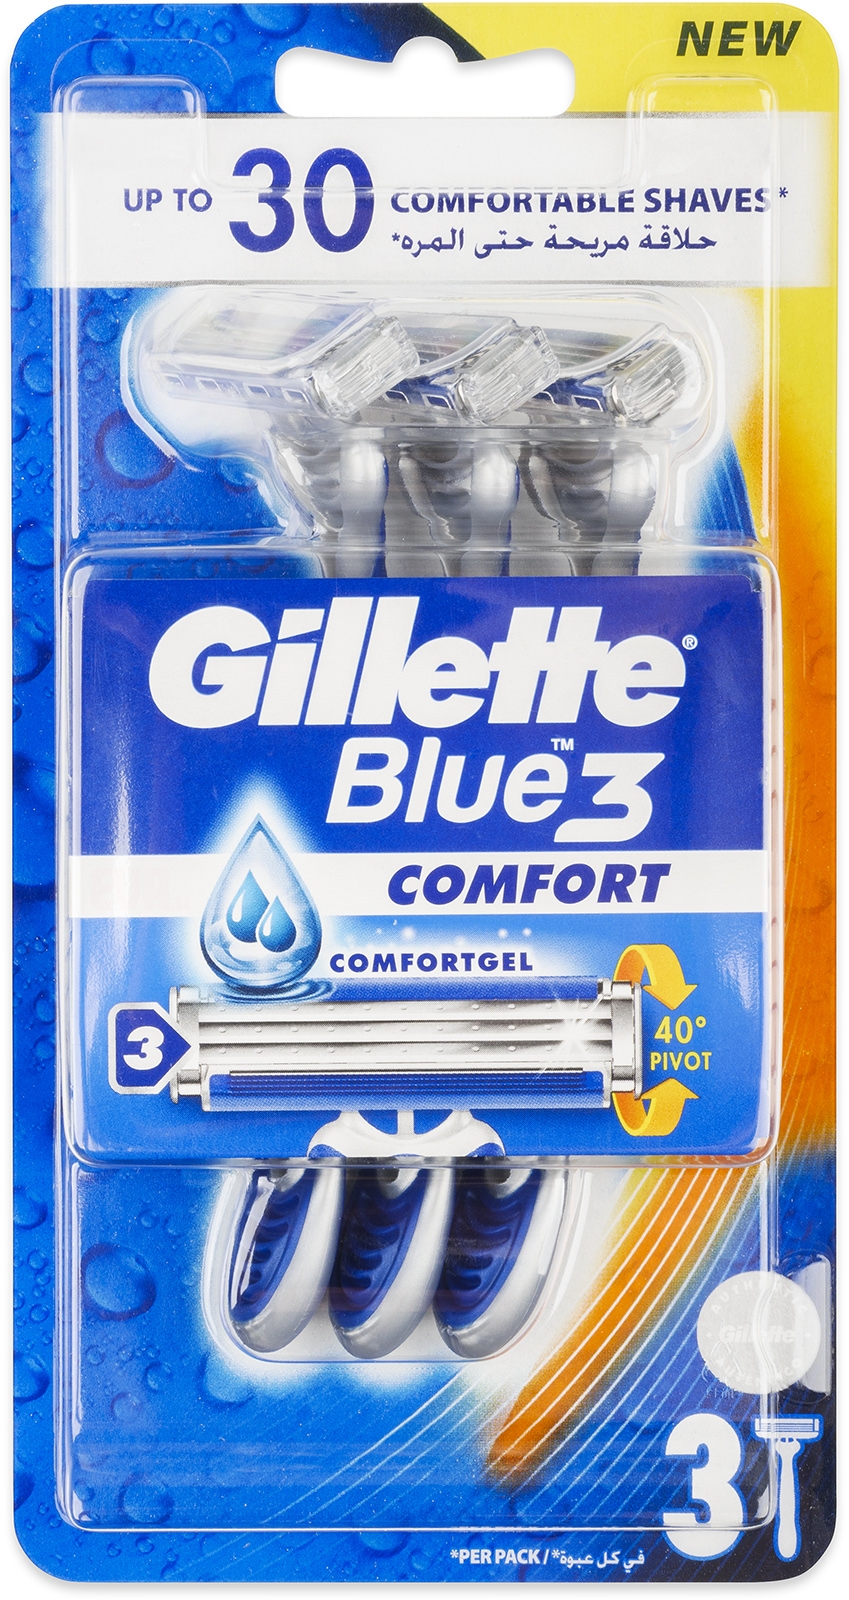 Gillette Blue3 Comfort Holítka 3 Ks 59 Kč